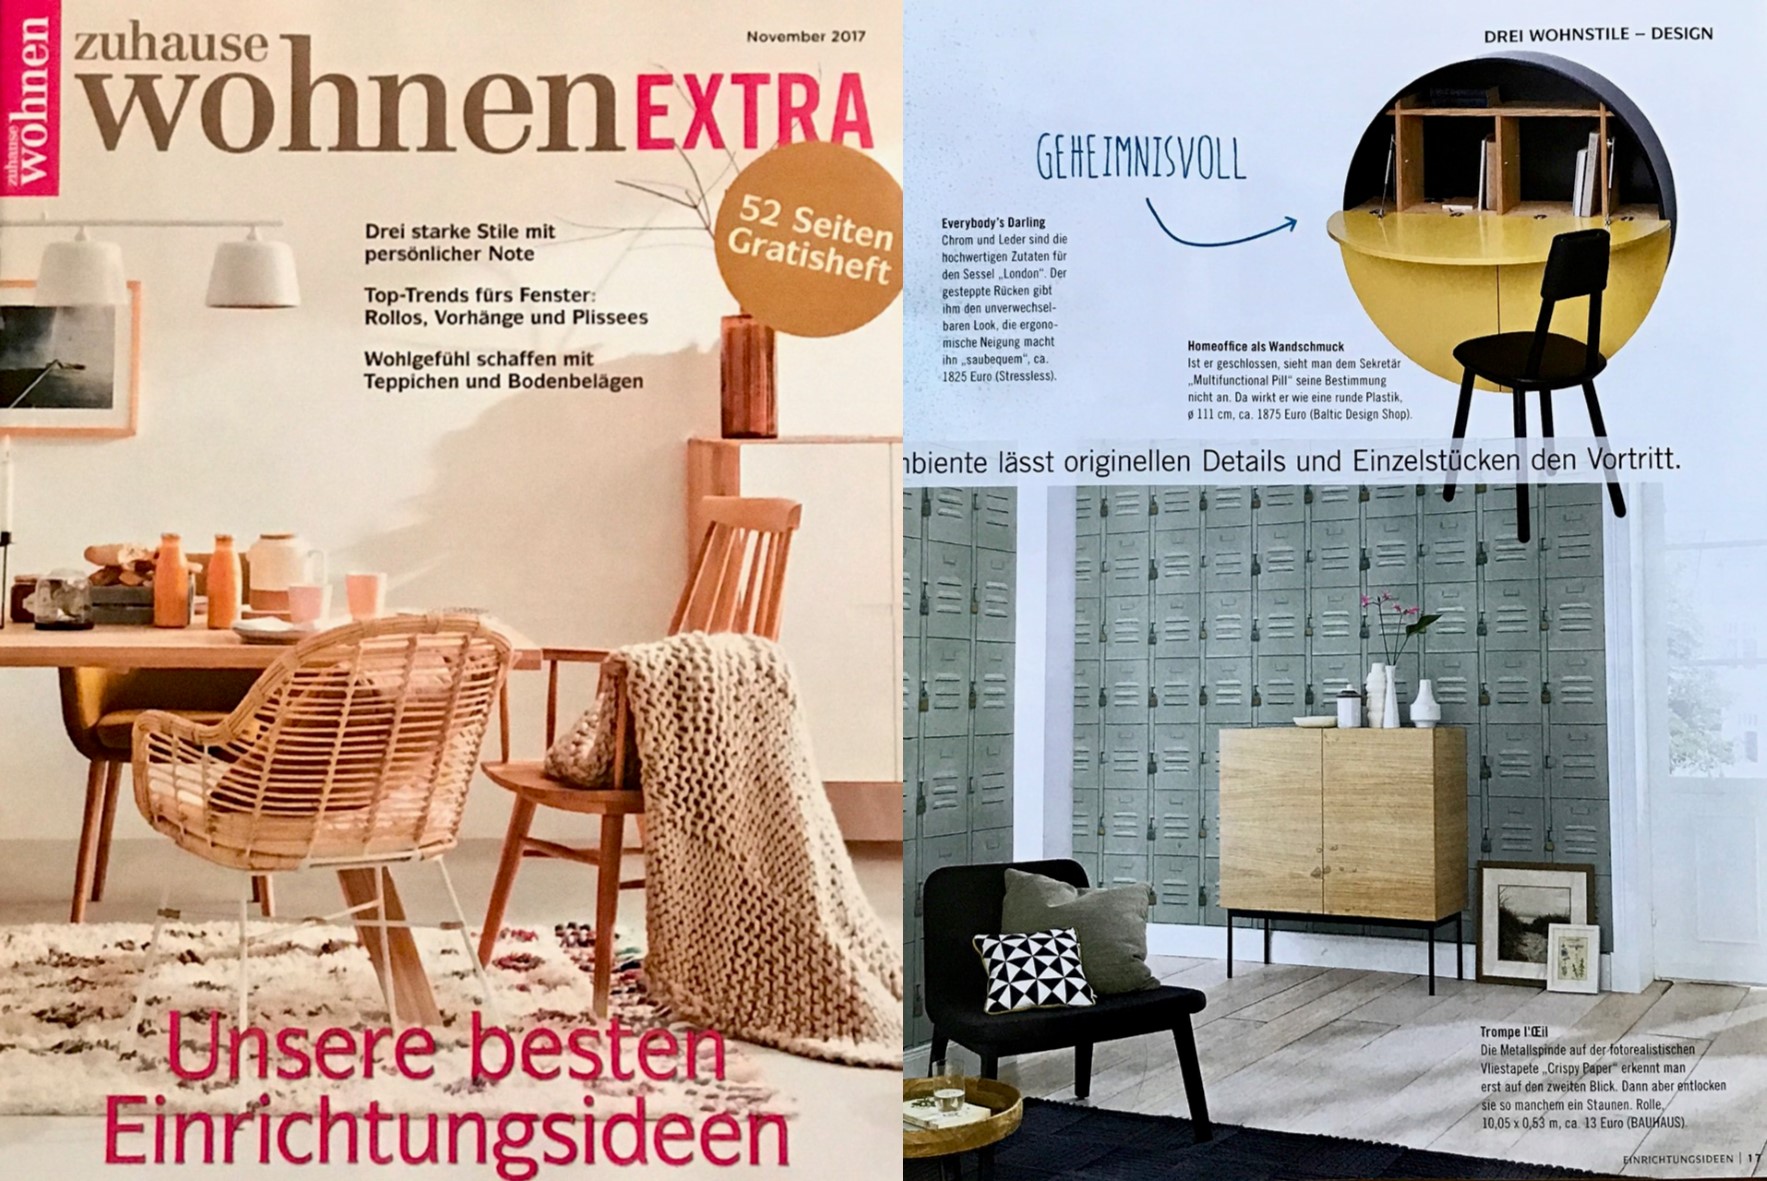 Baltic Design Shop in Zuhause Wohnen Magazin